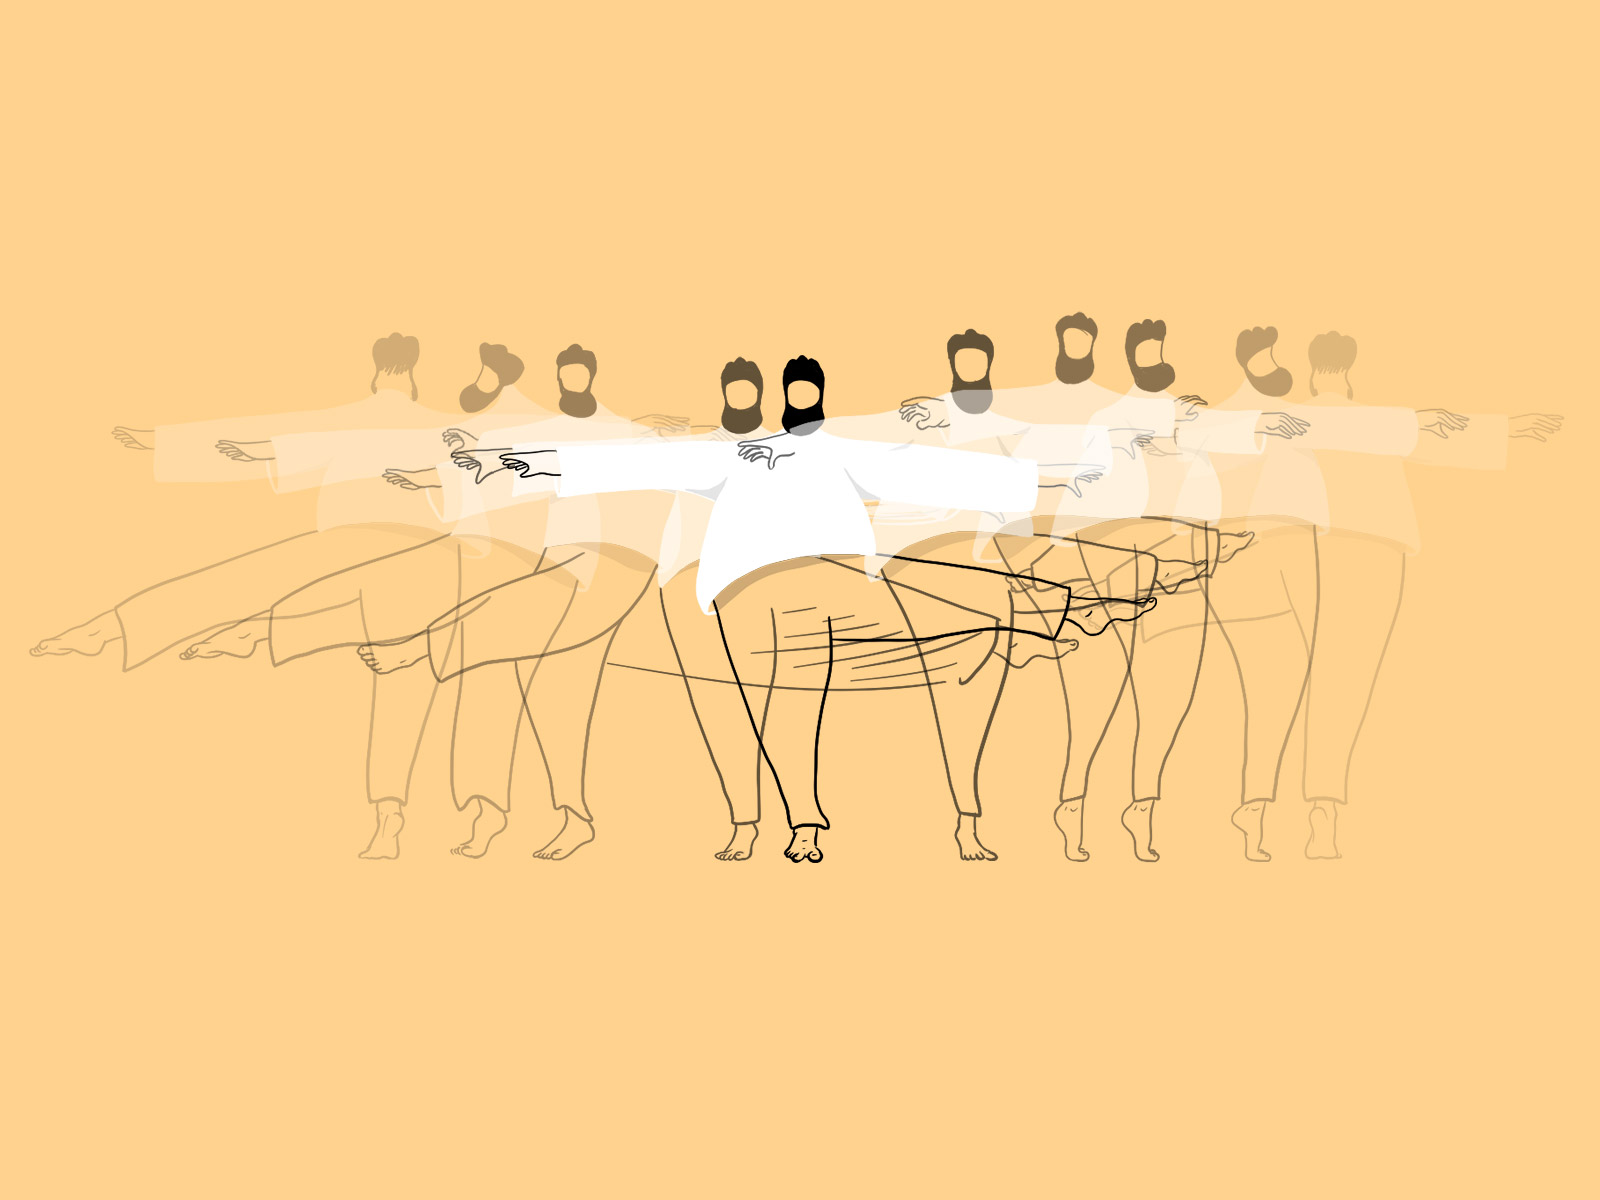 Il danse, animation de personnage image par image par Hervé Augoyat